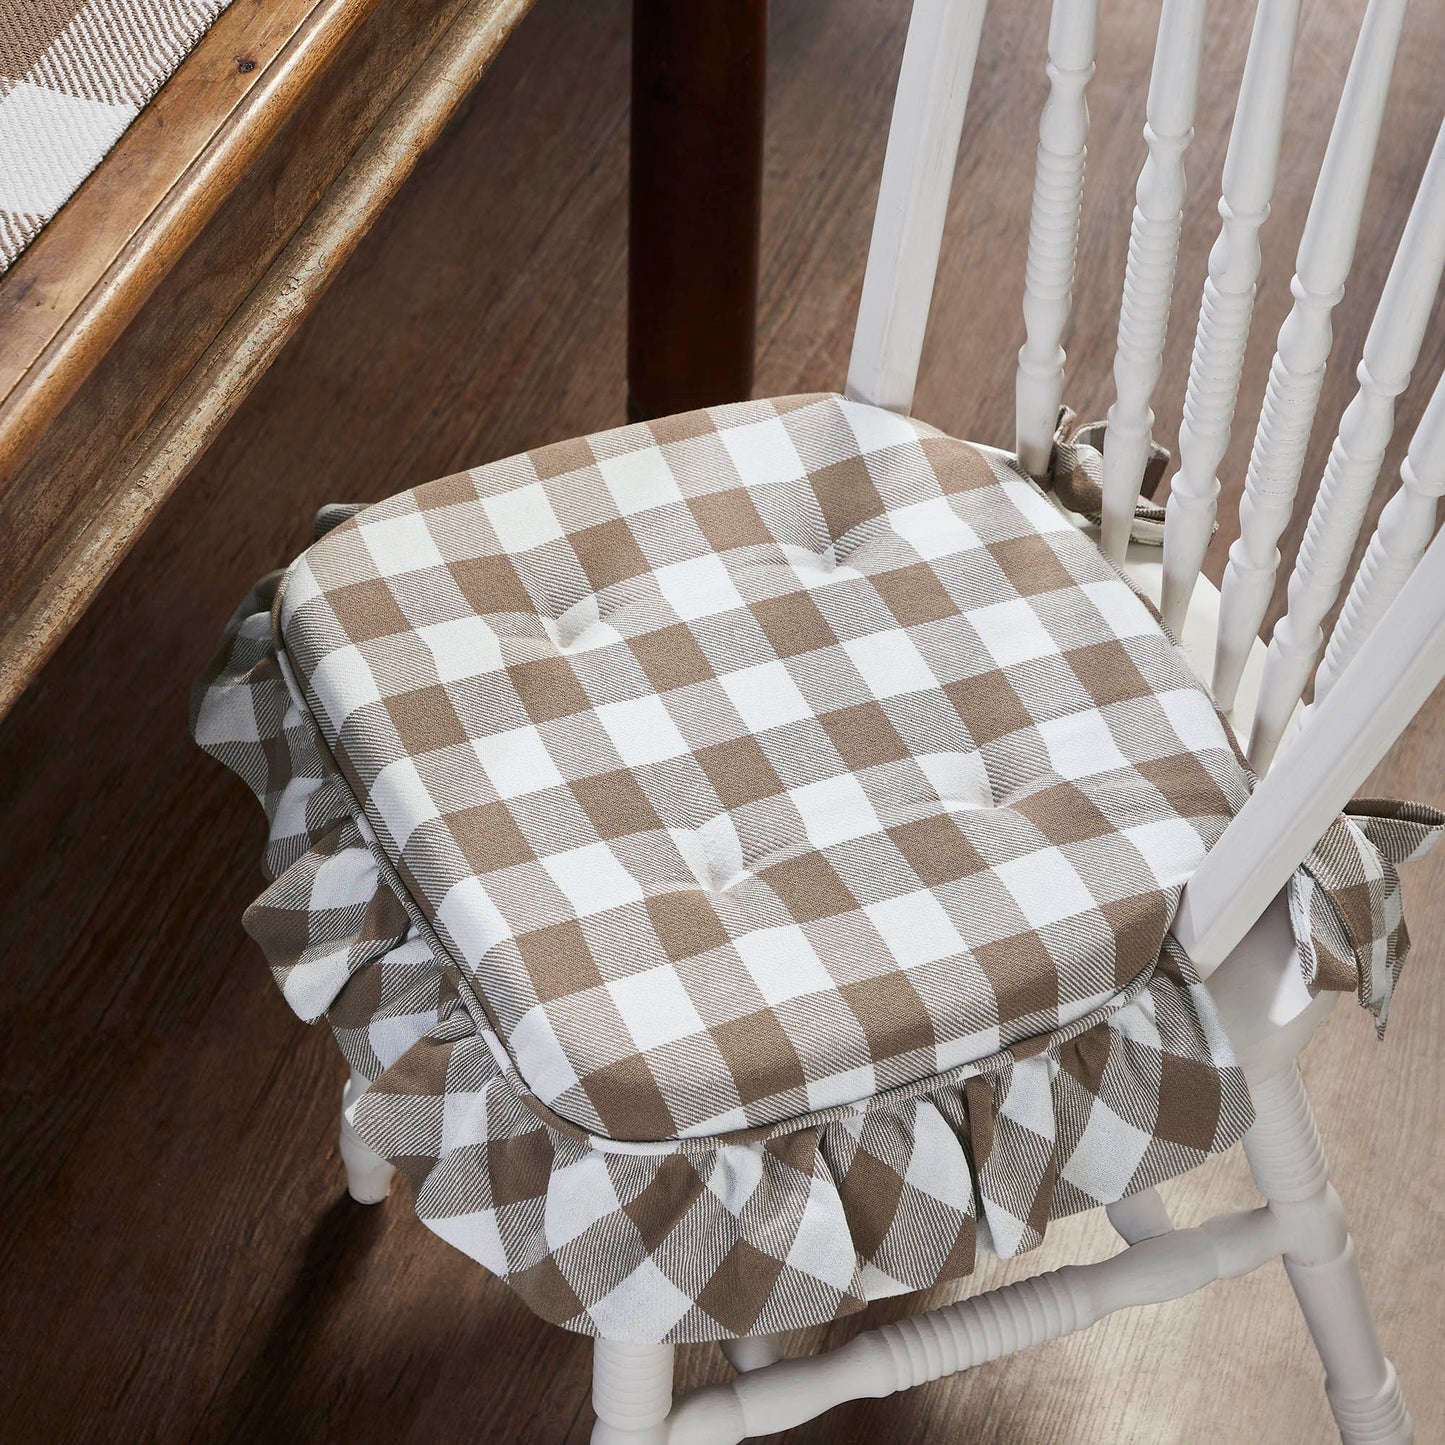 Annie Buffalo Check Portabella Ruffled Chair Pad 16.5x18 SpadezStore